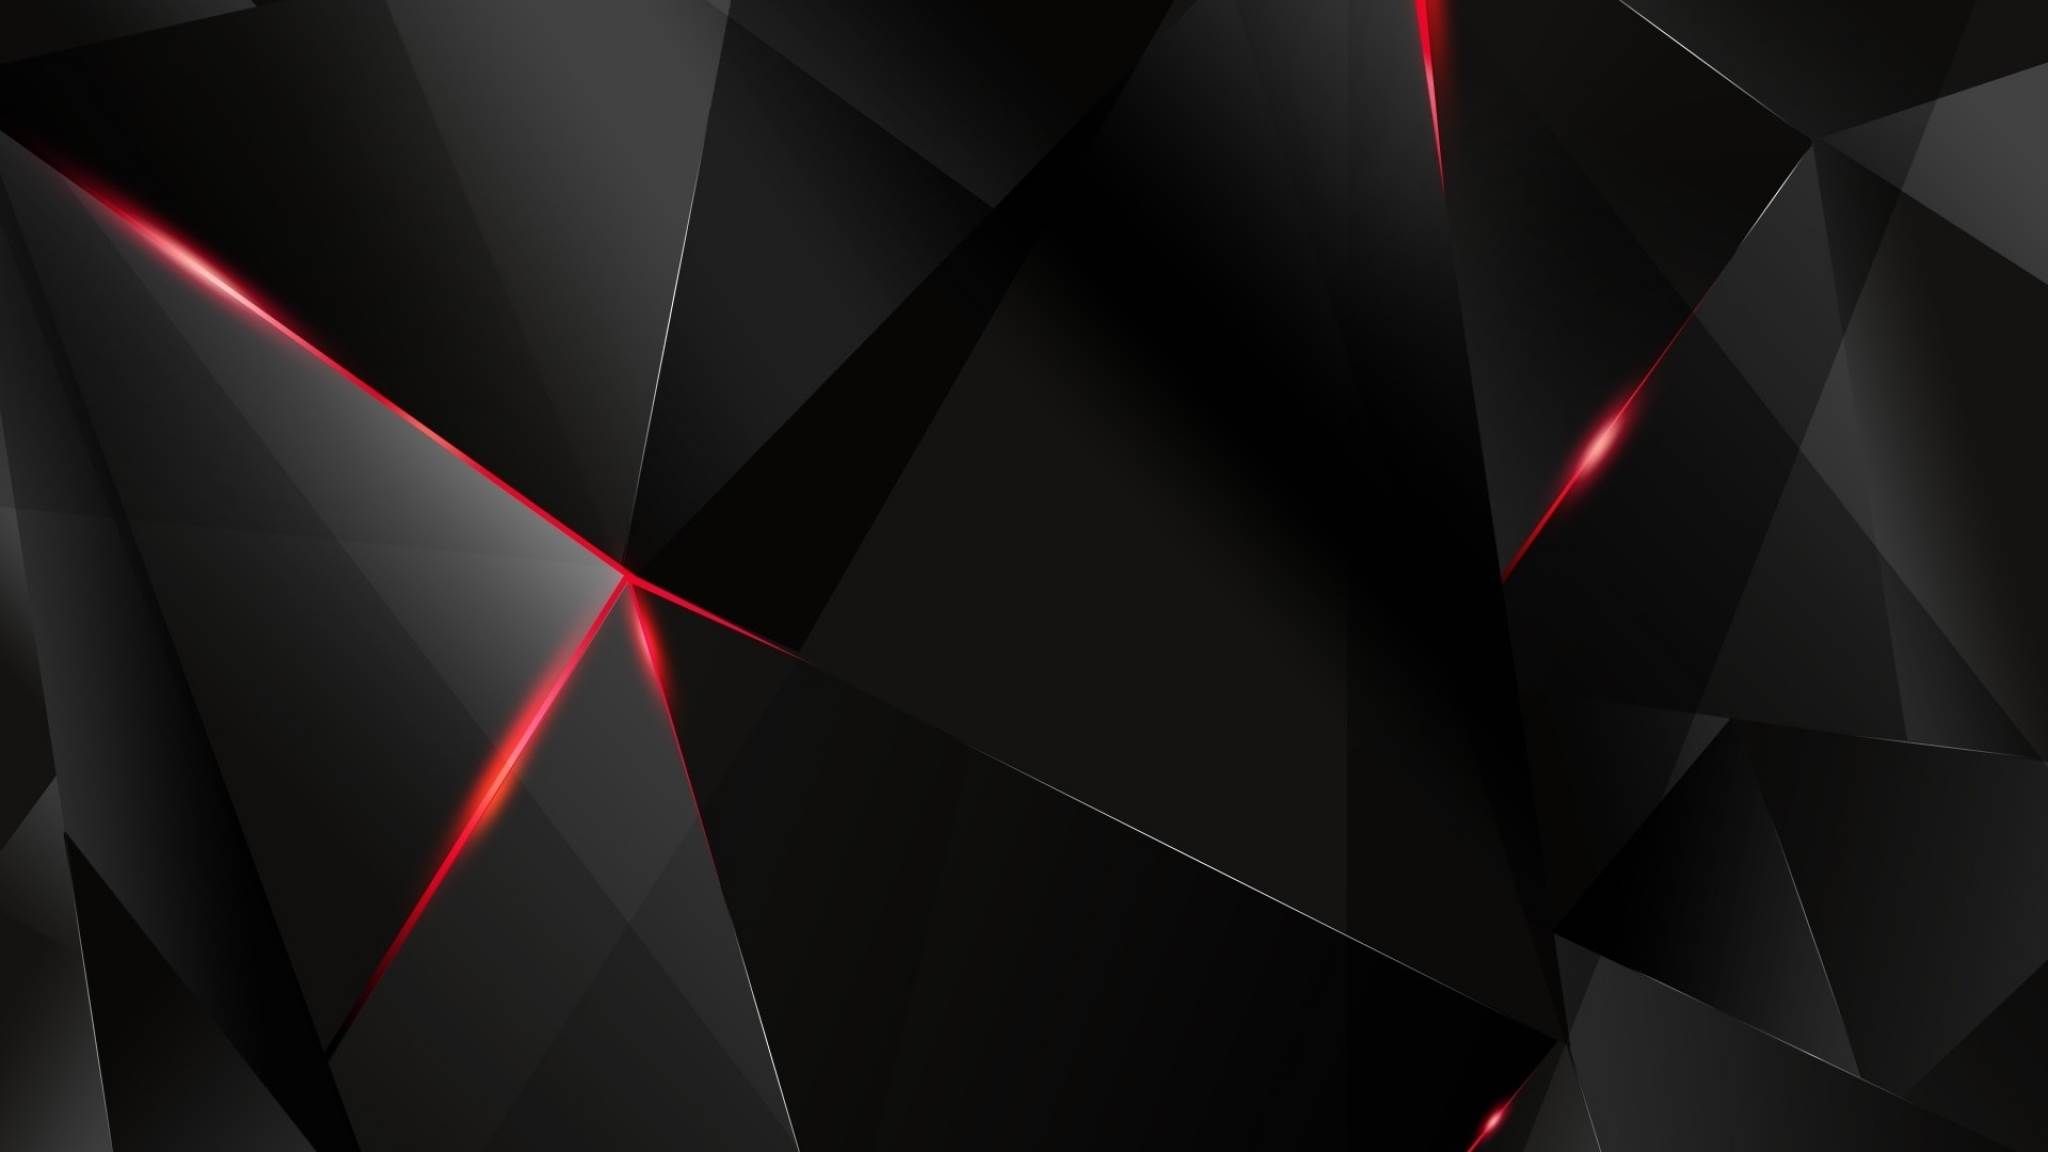 2048 x 1142 fond d'écran,noir,rouge,lumière,ligne,triangle